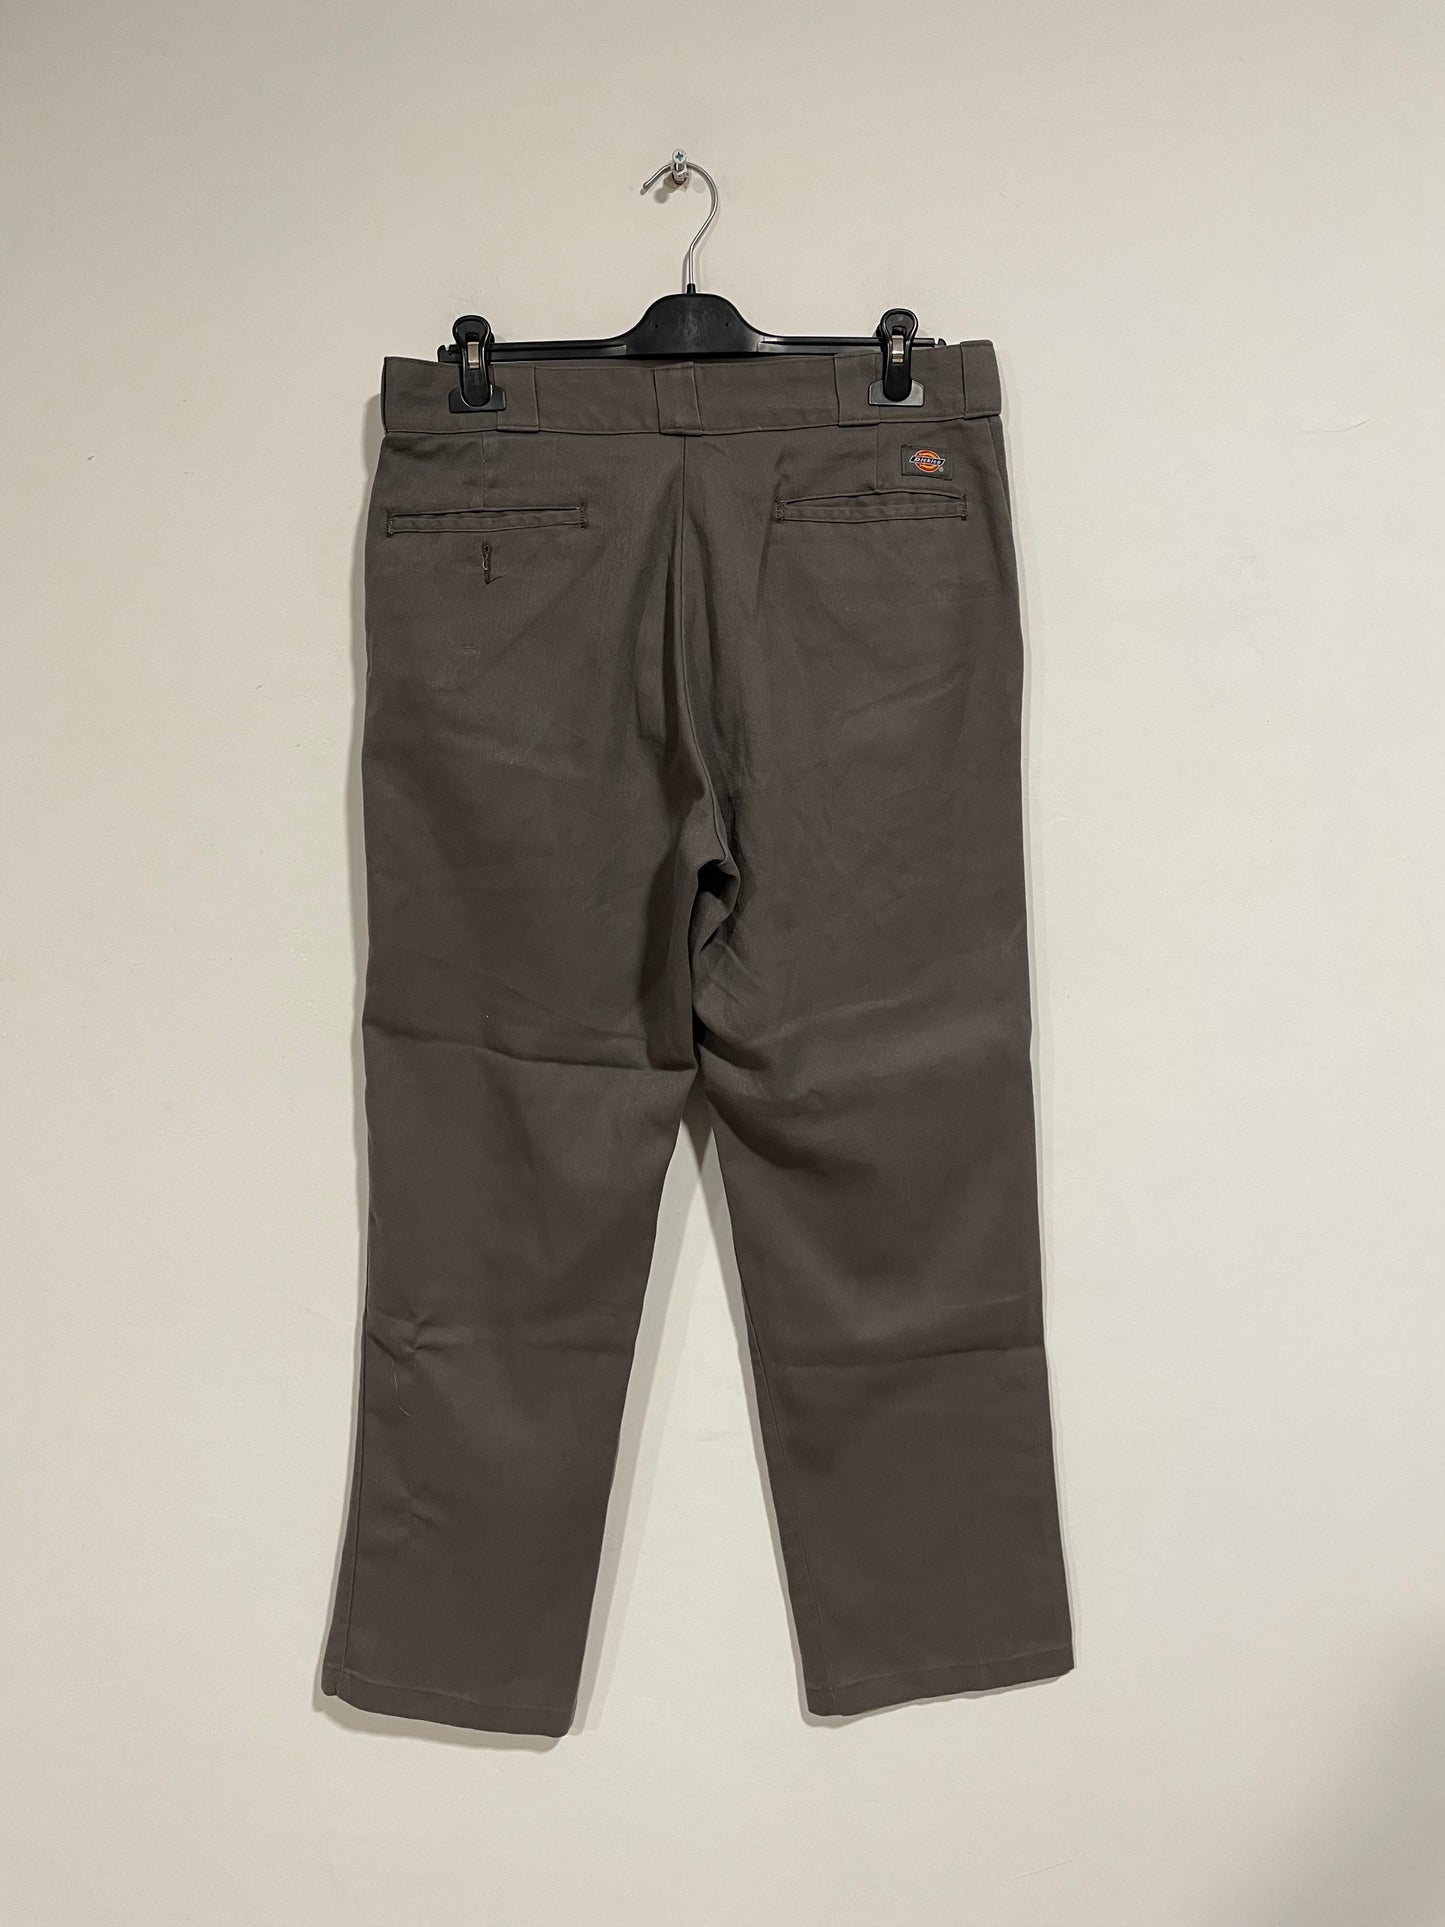 Pantalone Dickies 874 Grigio (D118)